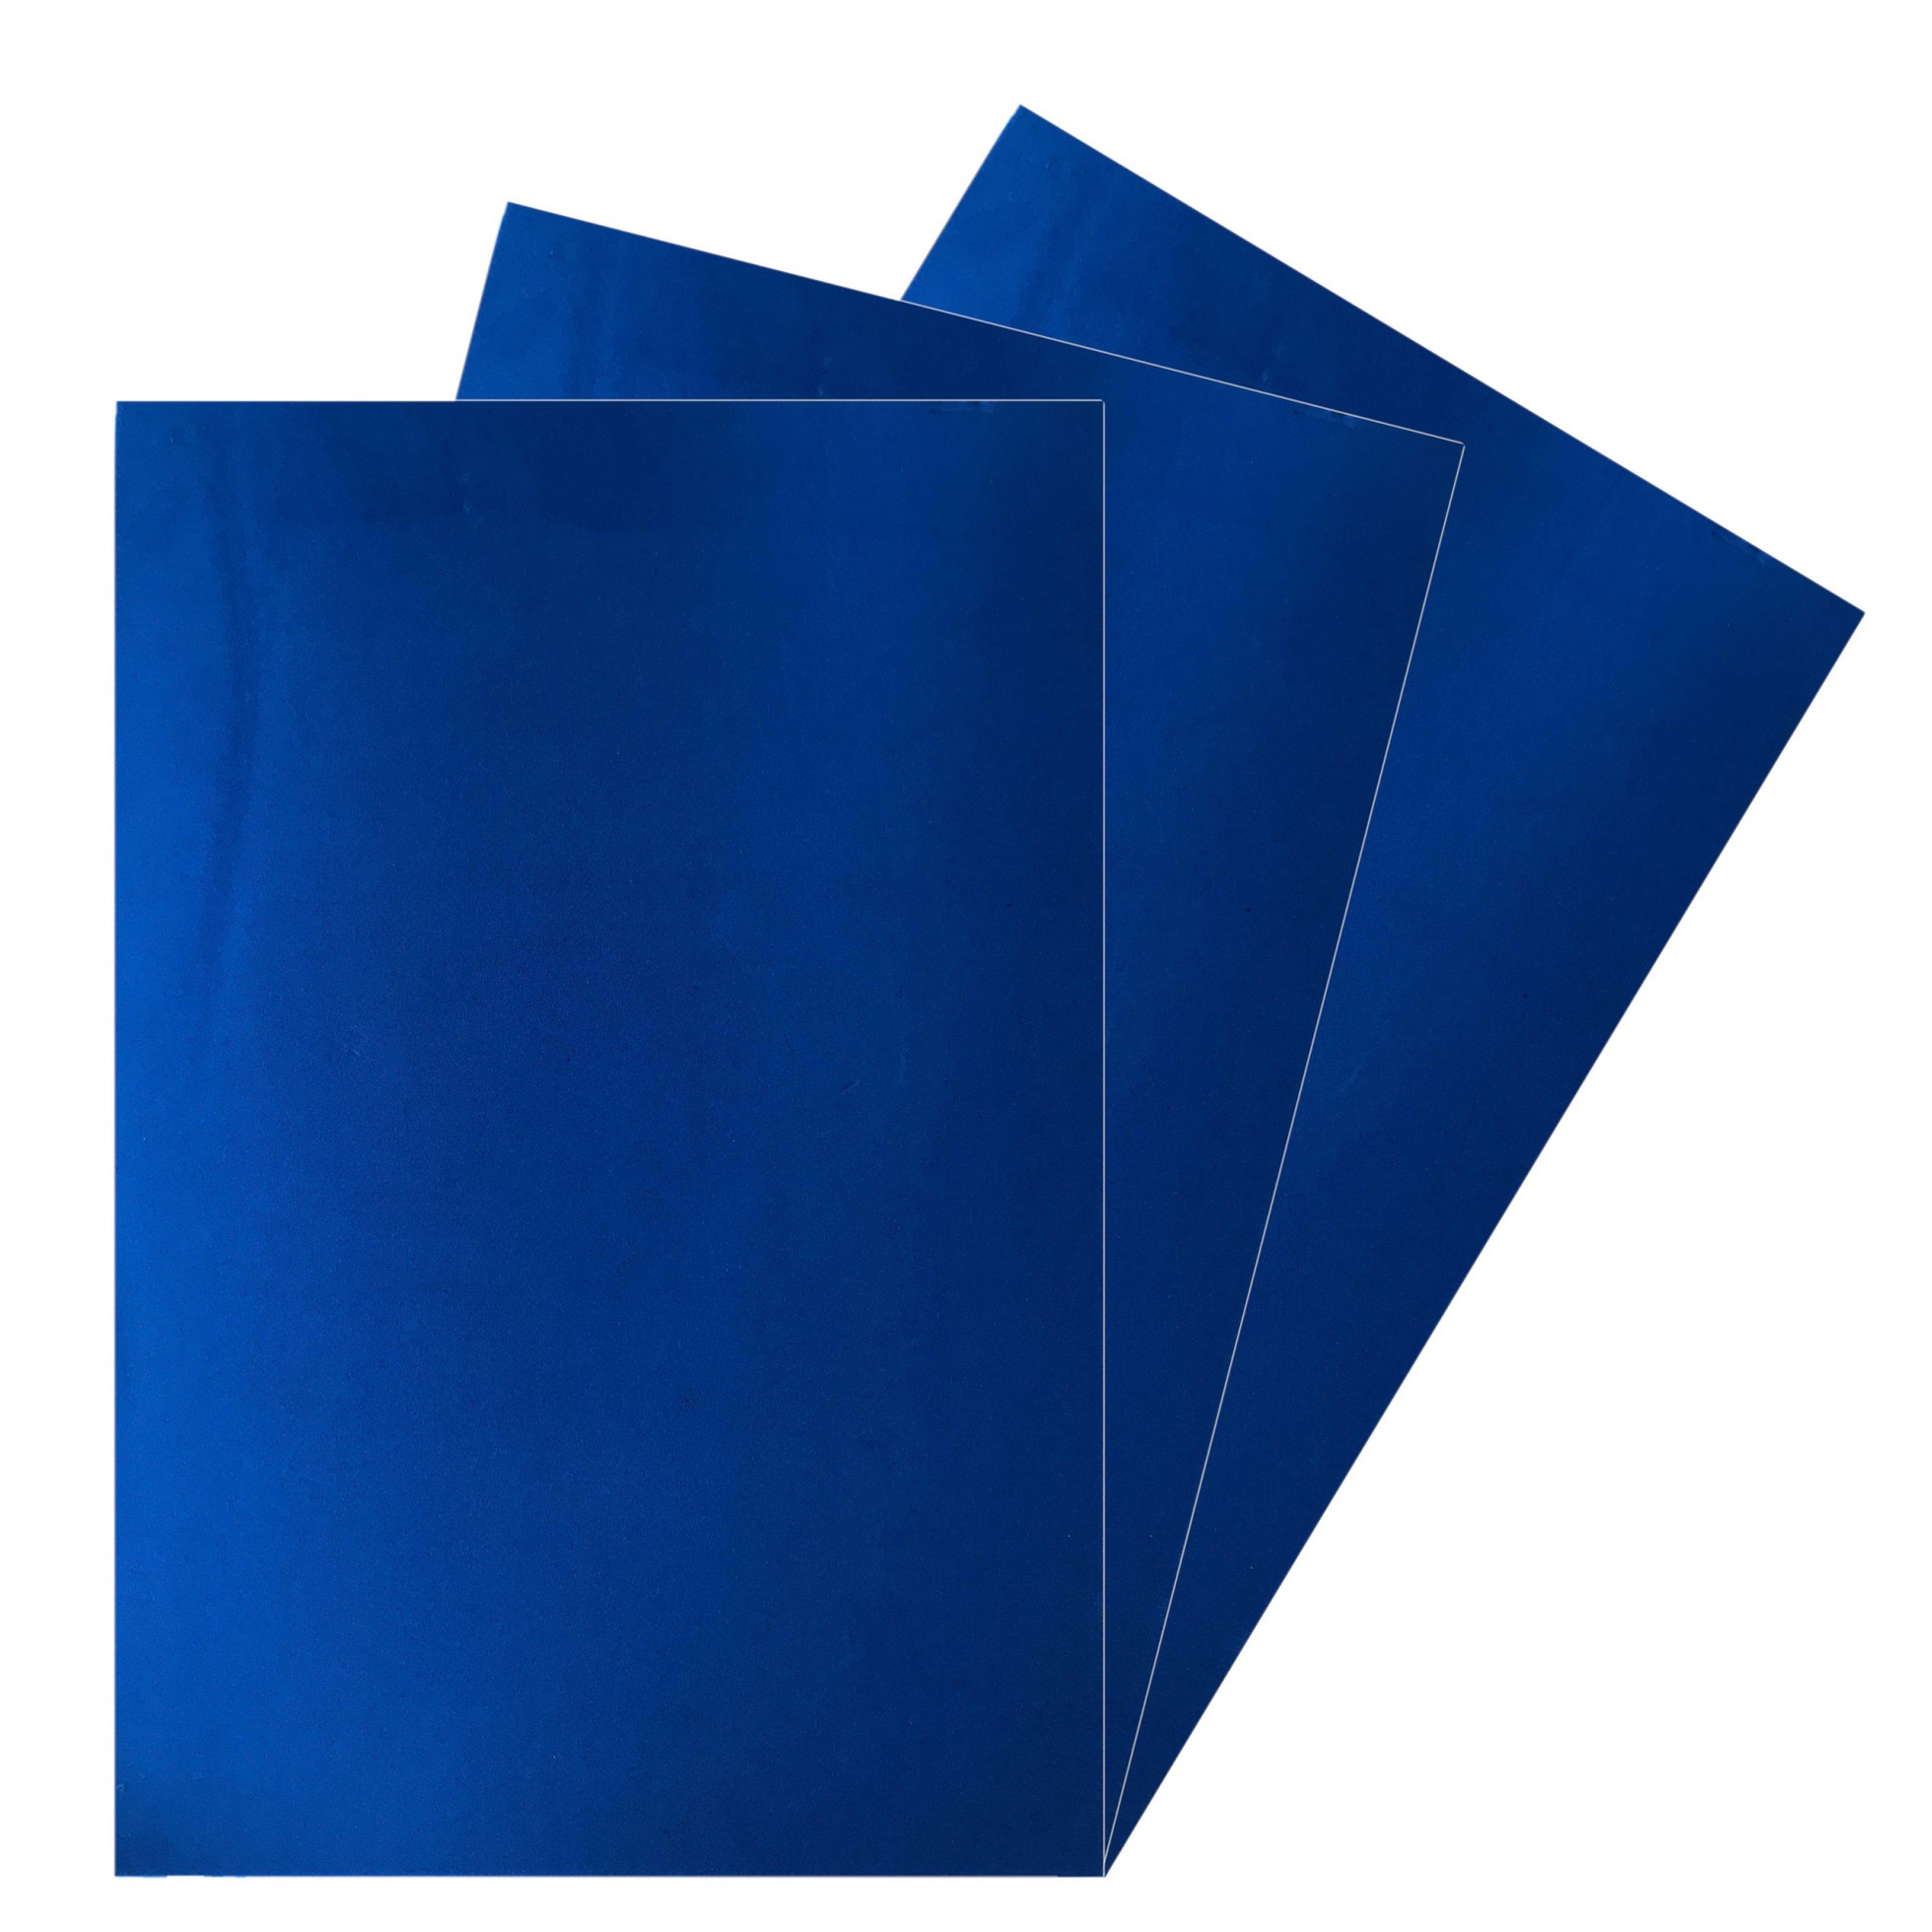 5x Vellen crepla knutsel foam rubber blauw 20 x 30 cm